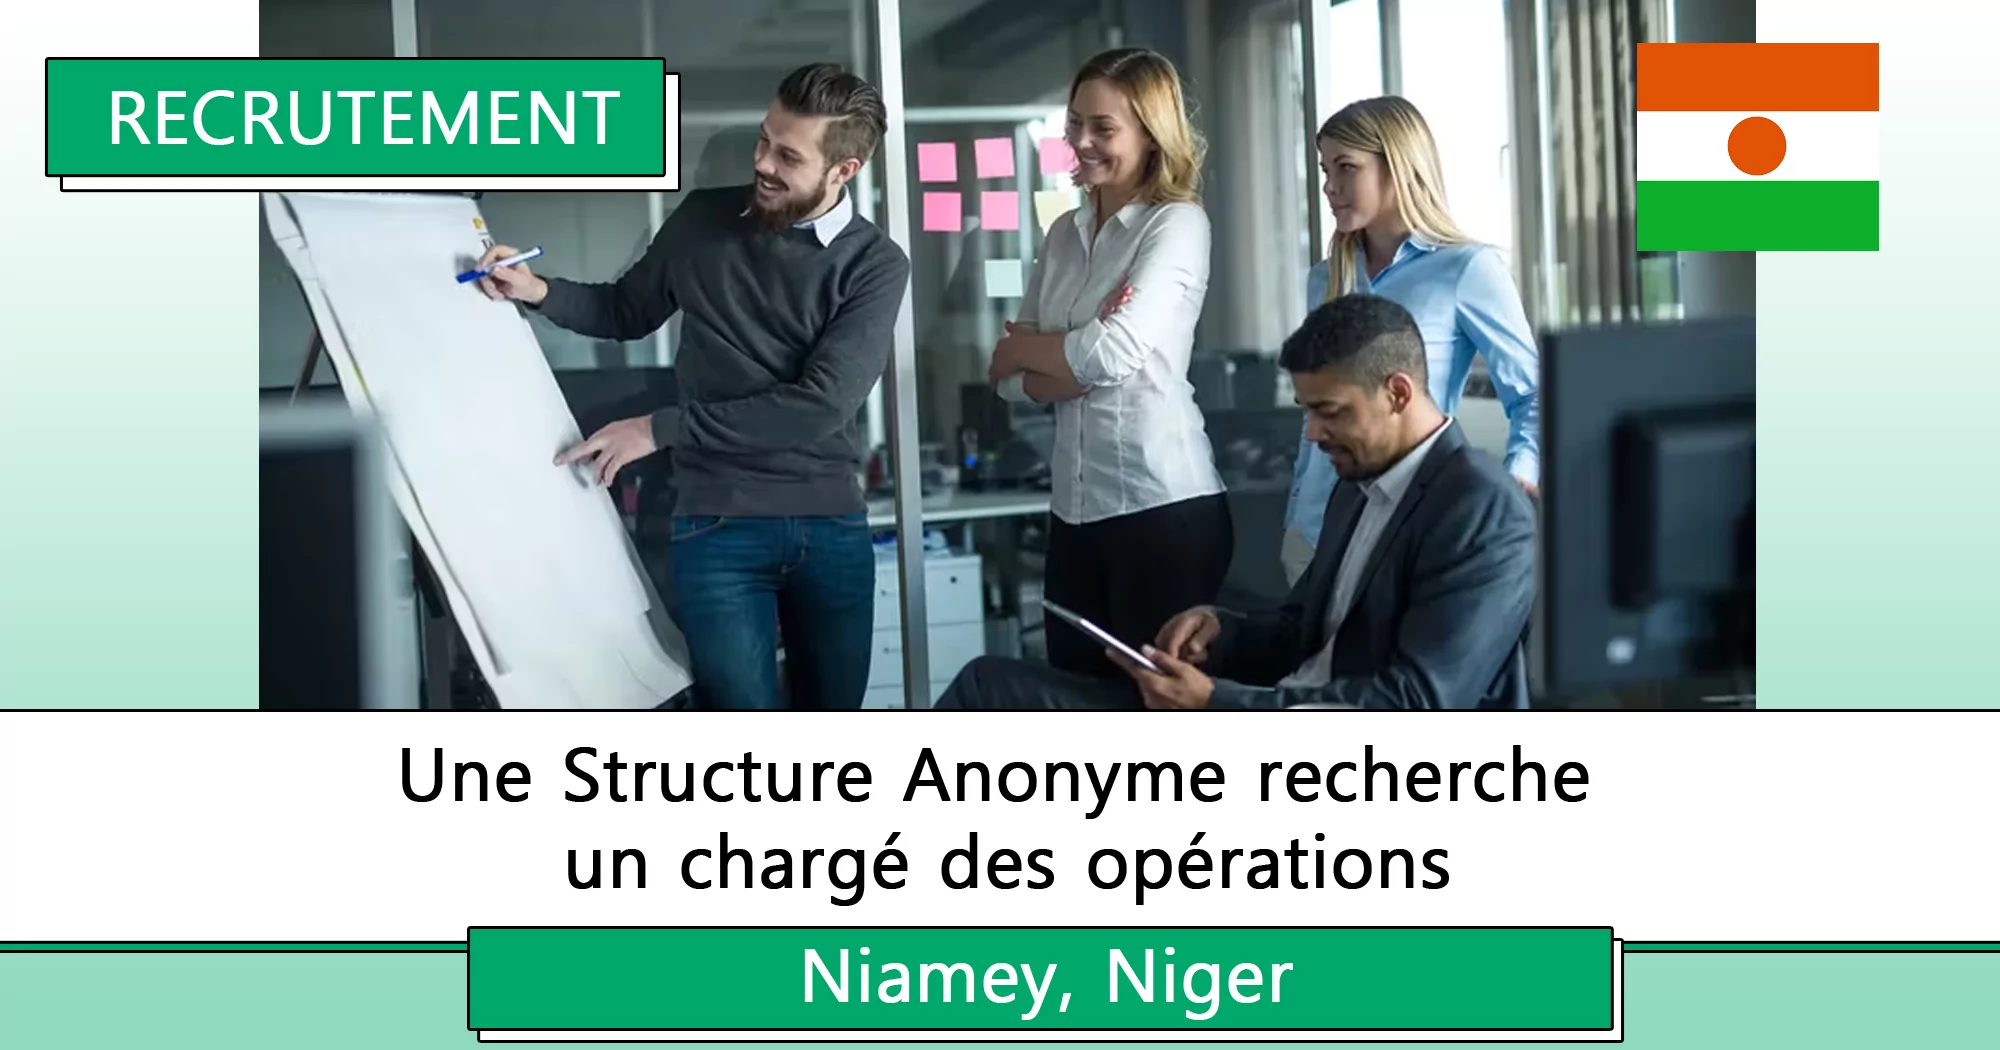 Une Structure Anonyme recherche un chargé des opérations, Niamey, Niger